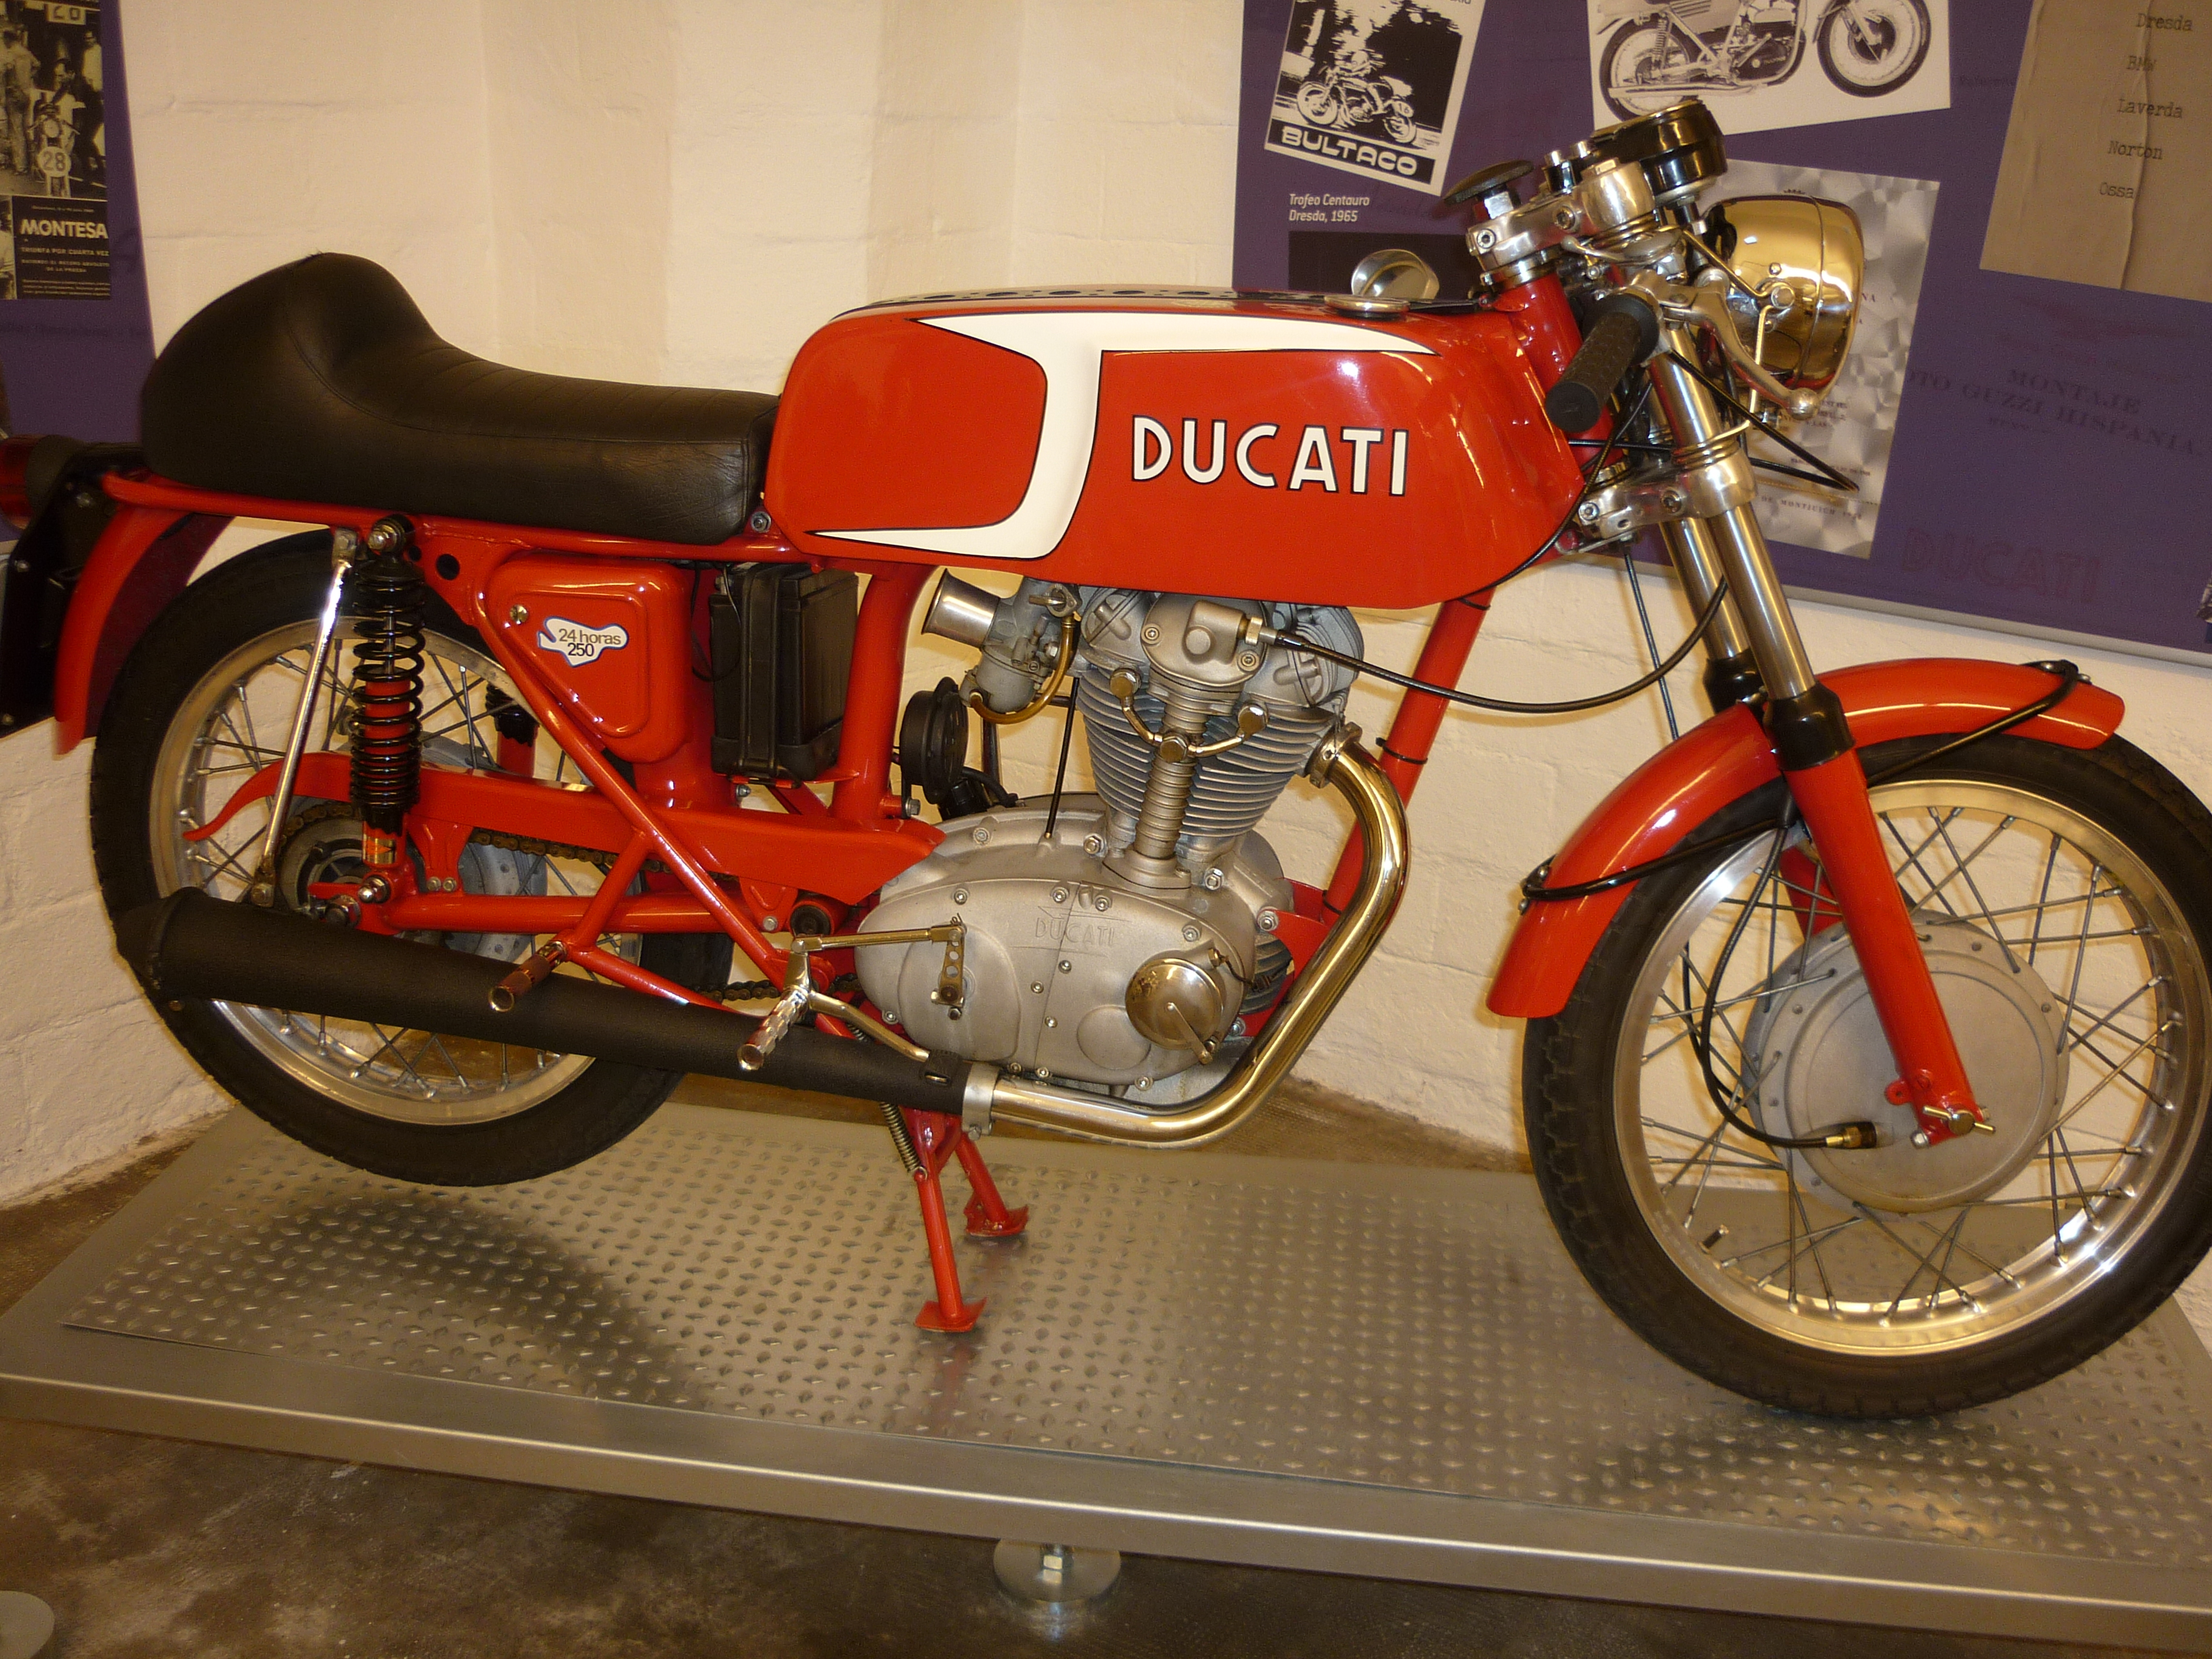 Ducati_Mototrans_24H_250cc_1973.JPG